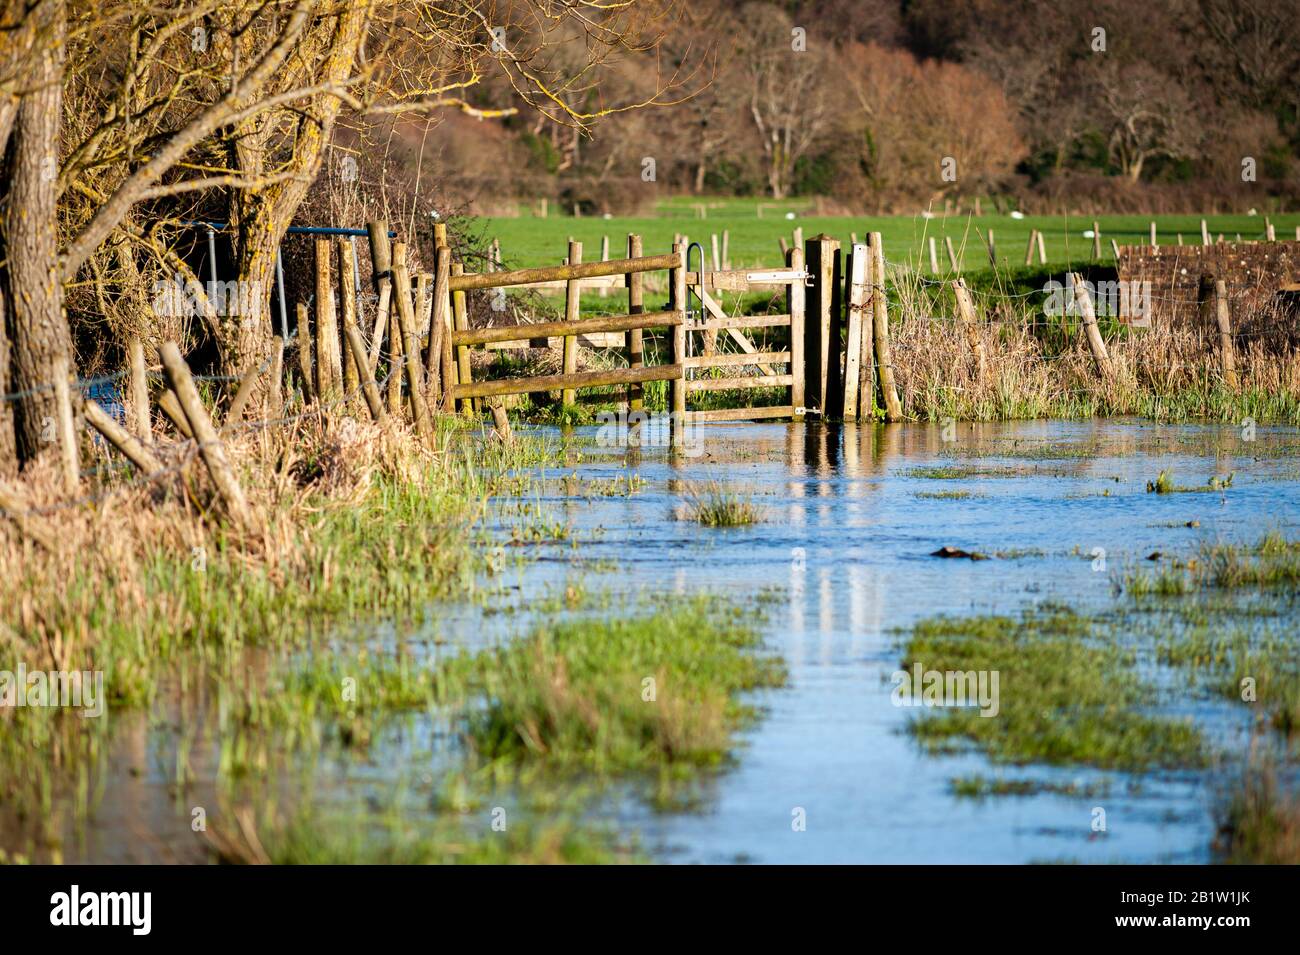 Überschwemmter Fußweg nach starkem Regen im Februar 2020, Avon Valley Footpath, Hampshire, Großbritannien Stockfoto